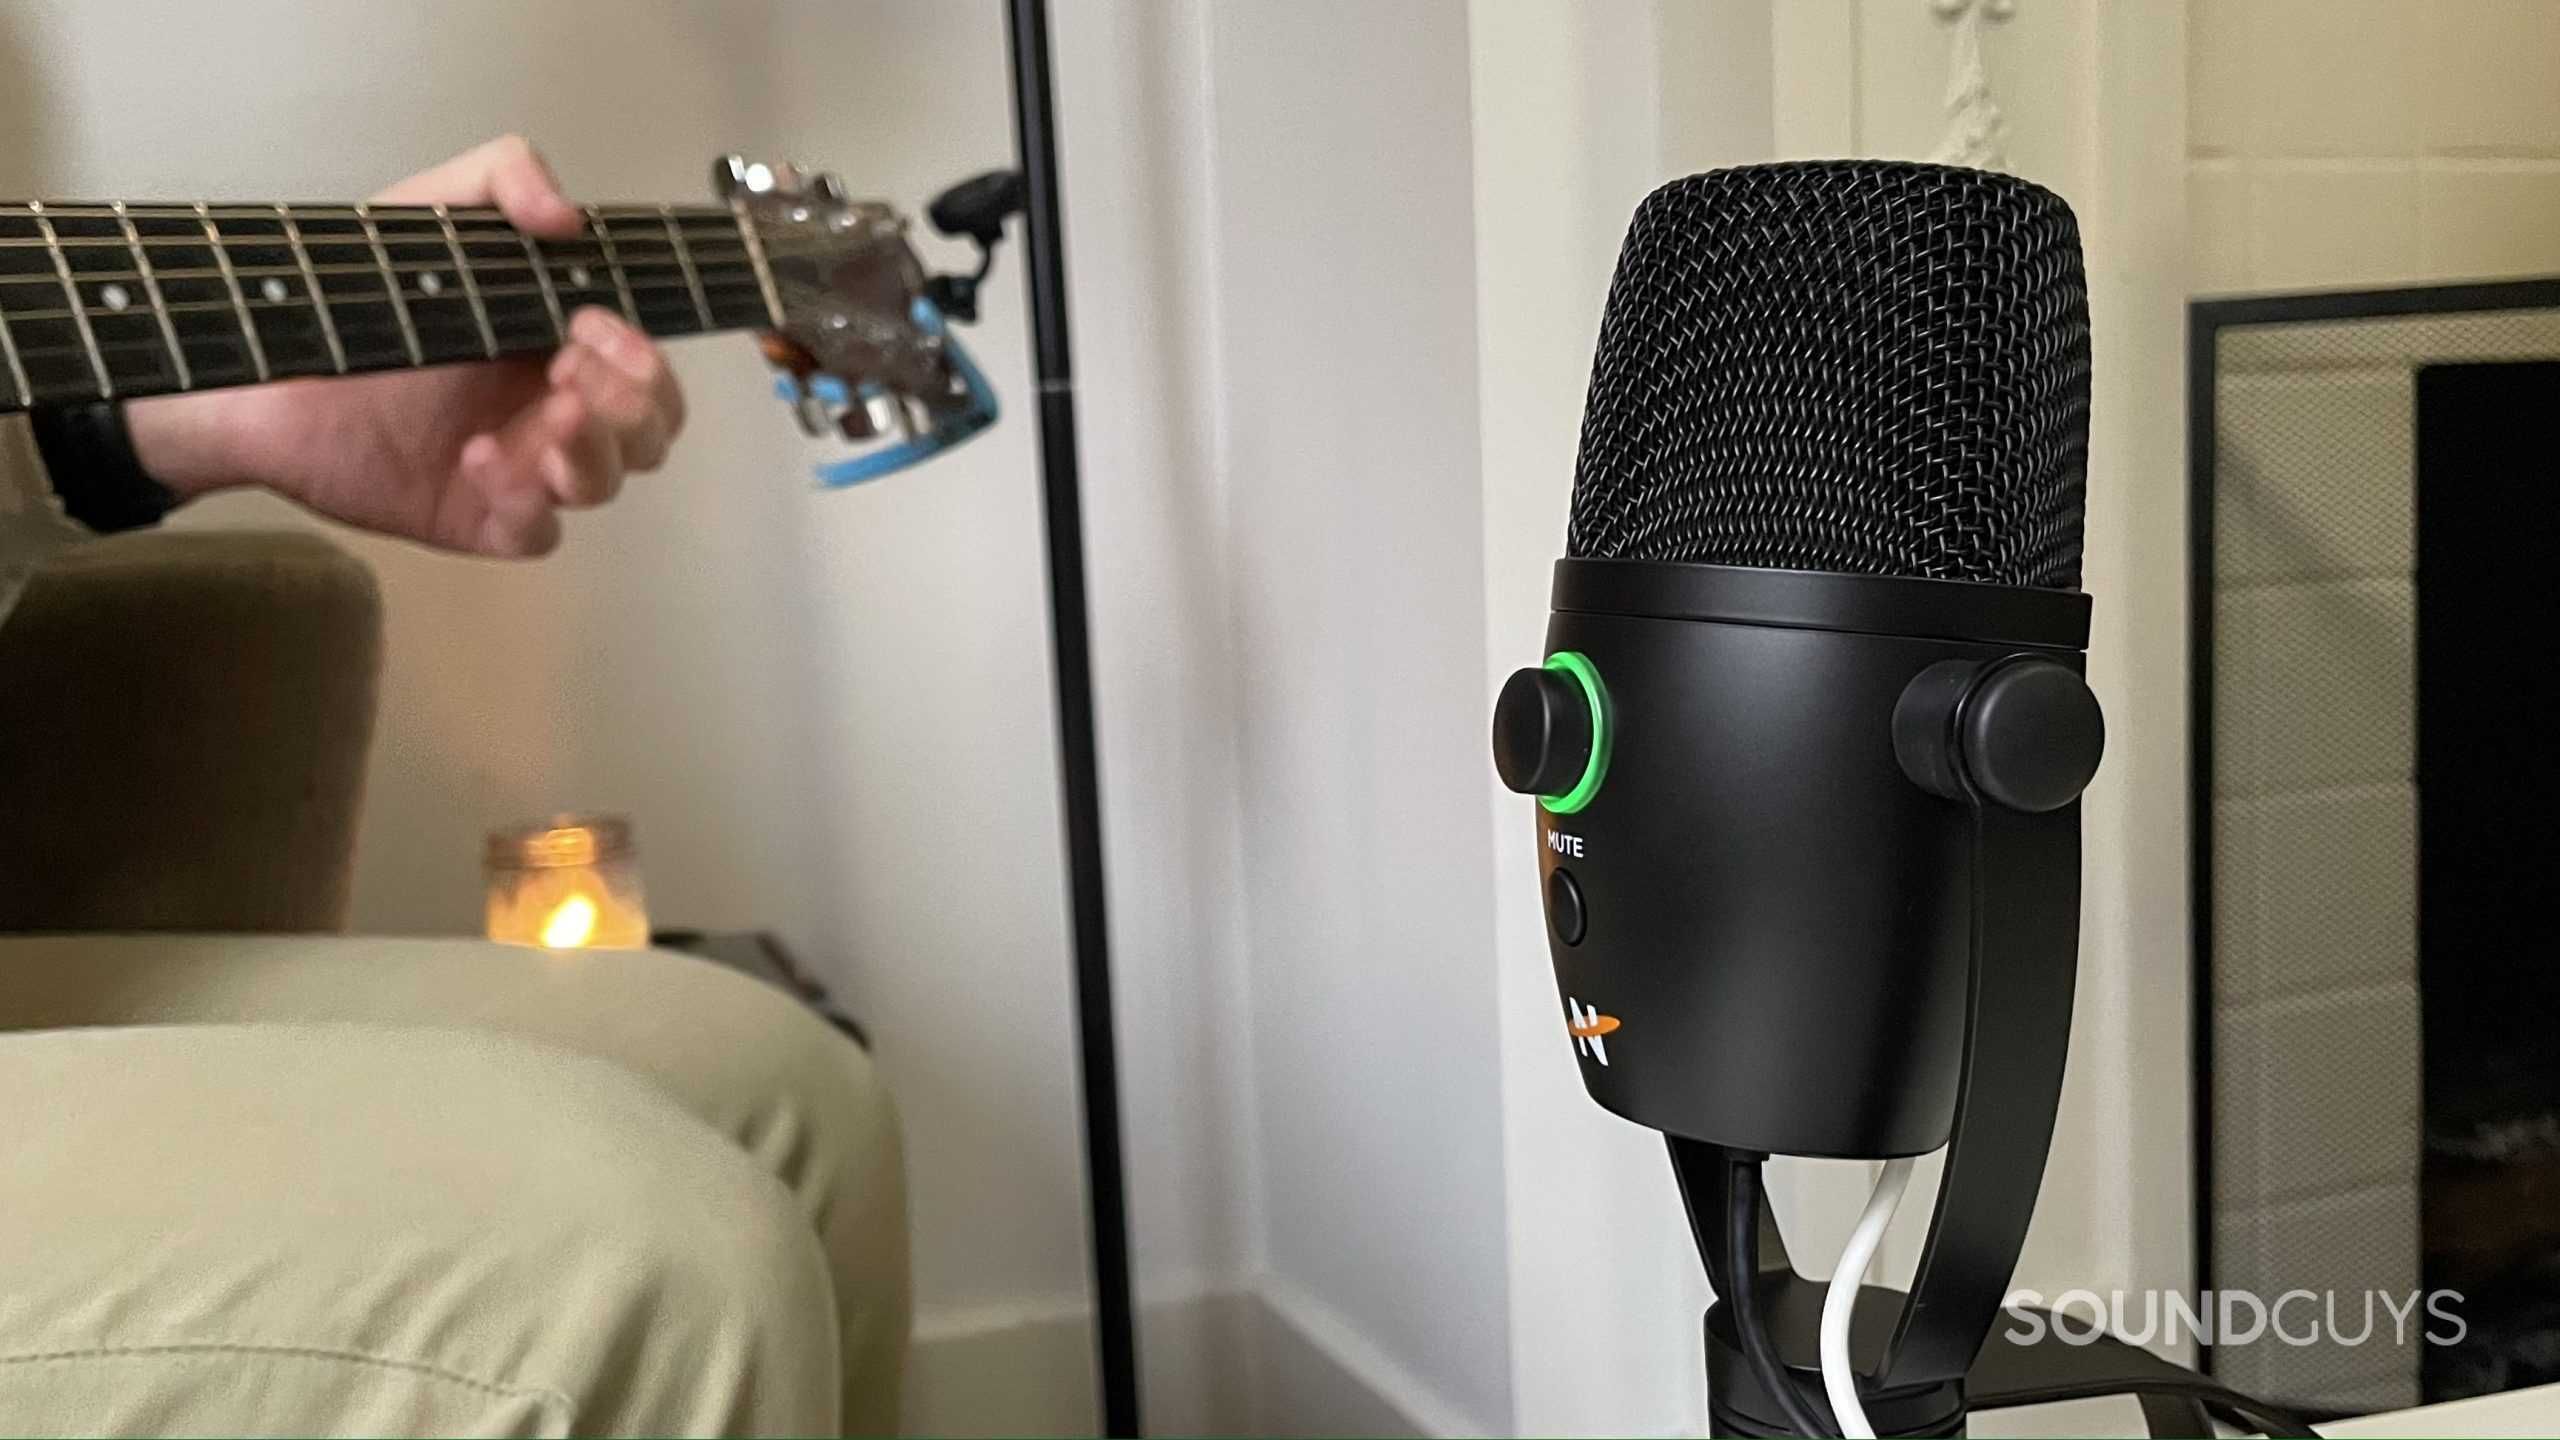 Новый студийный USB юсб микрофон mikrofon NEAT Bumblebee II